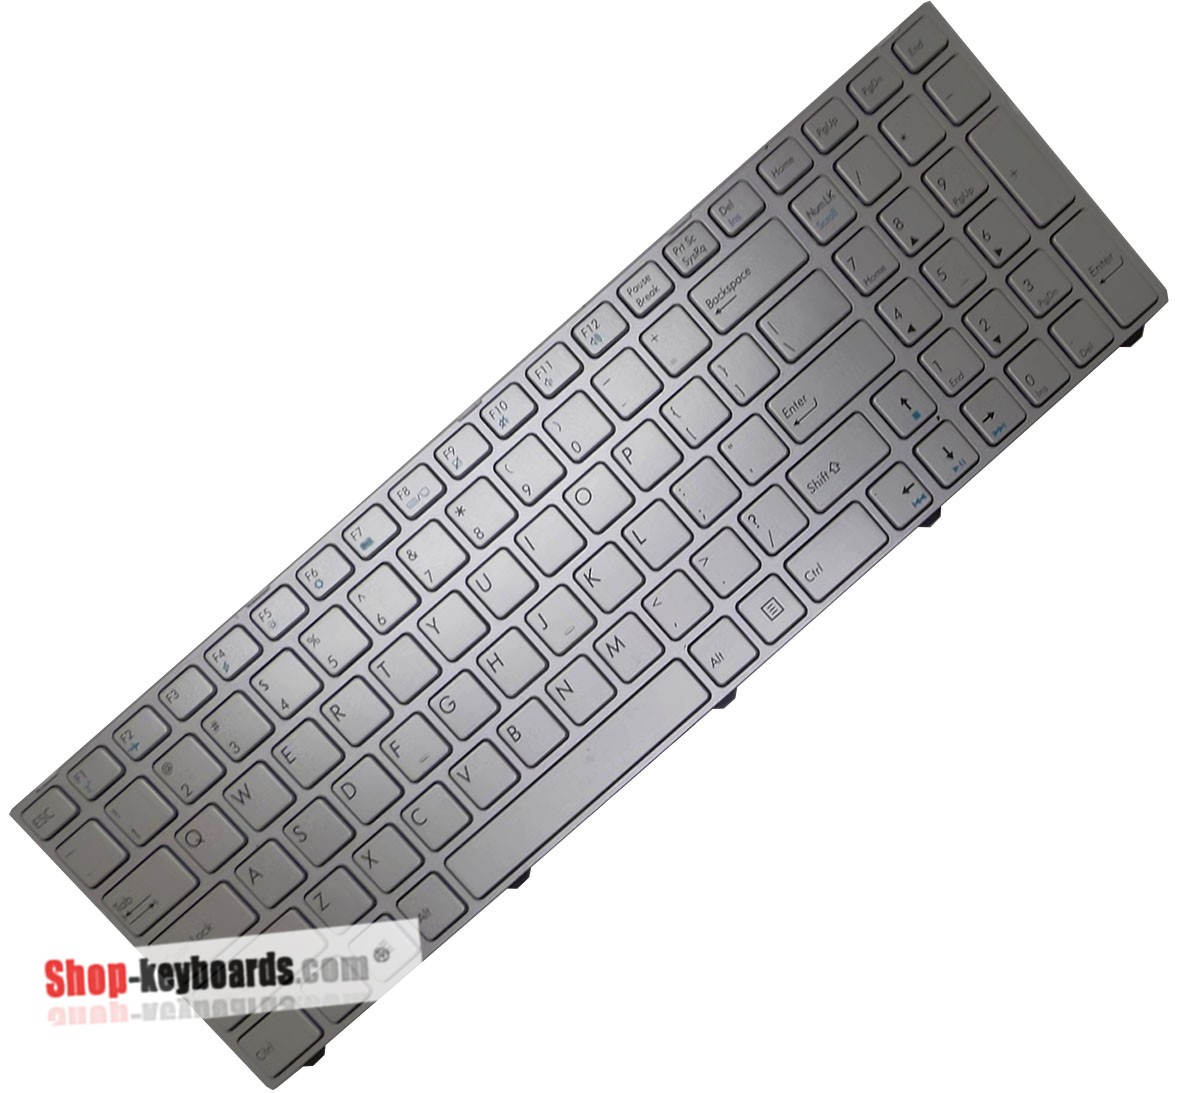 Medion Akoya P7643 Keyboard replacement